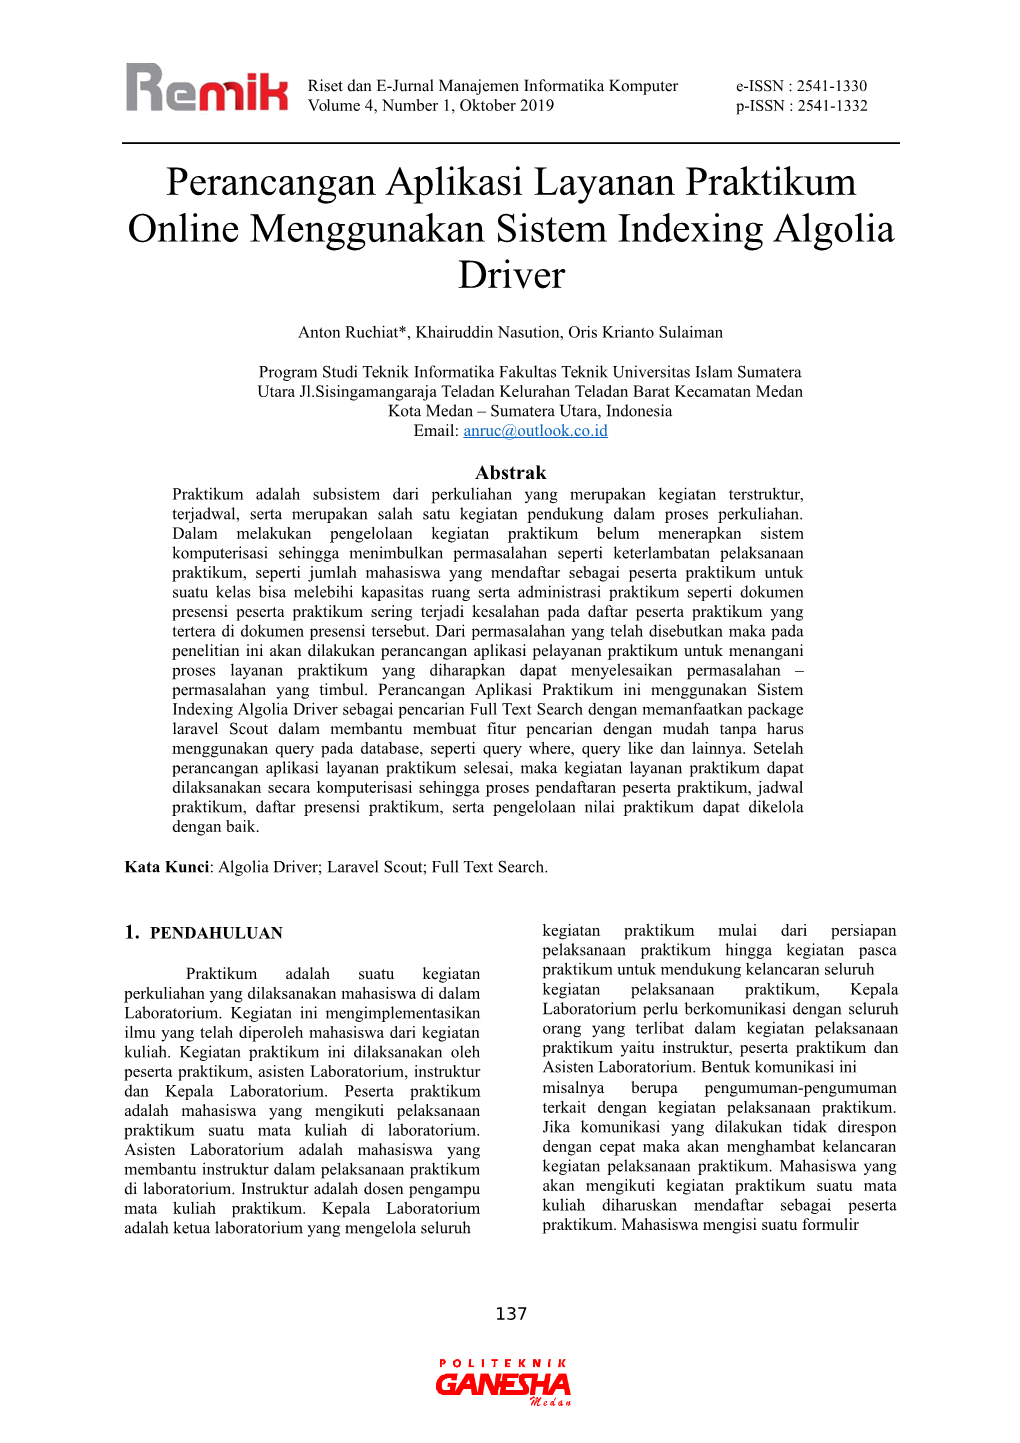 Perancangan Aplikasi Layanan Praktikum Online Menggunakan Sistem Indexing Algolia Driver